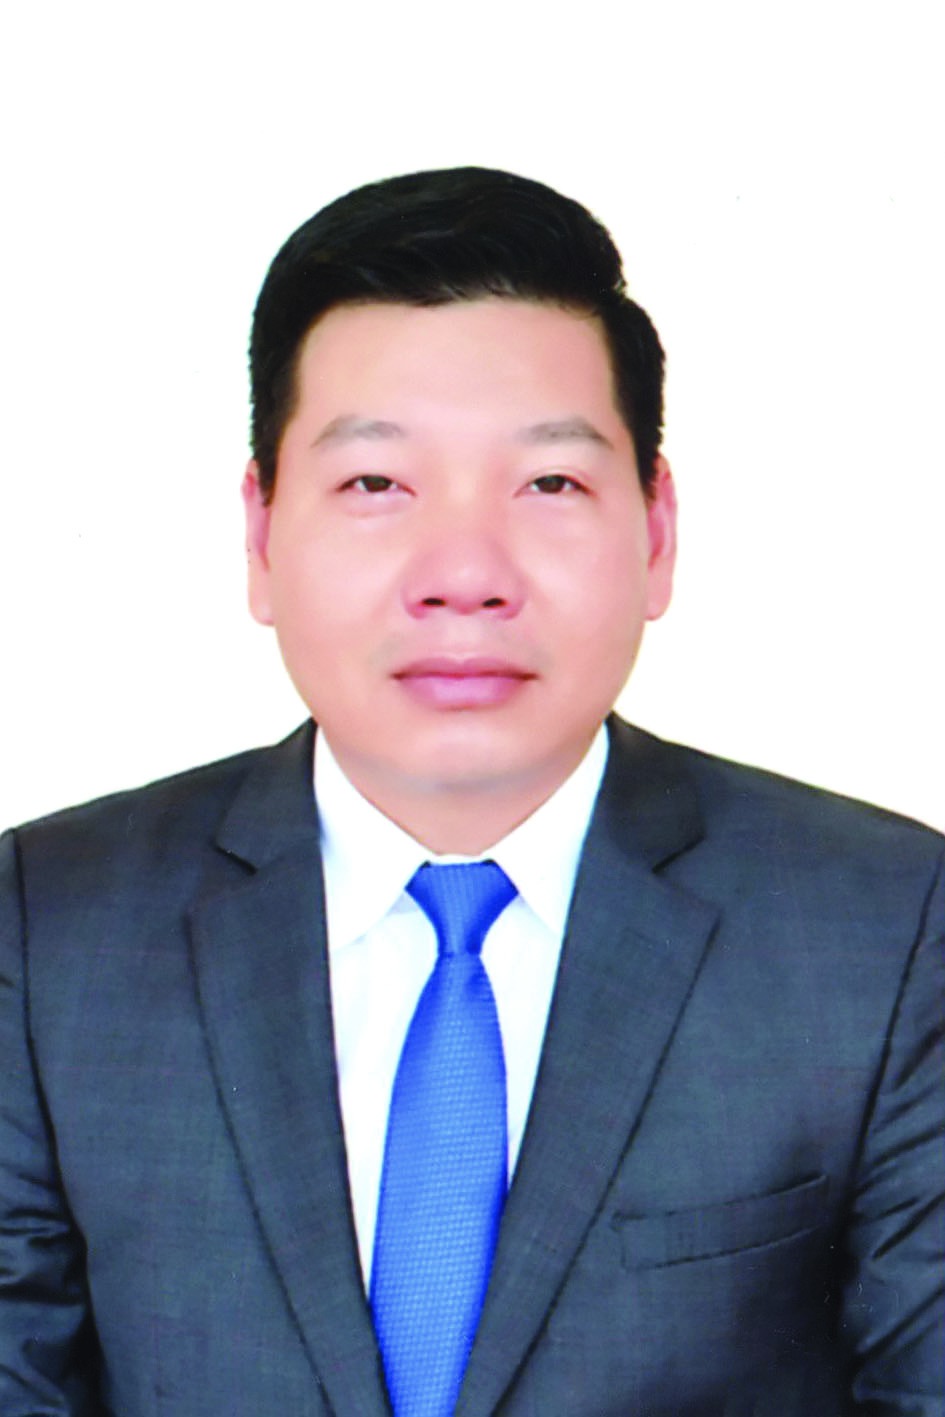 Chương trình hành động của Chủ tịch UBND huyện Quốc Oai Nguyễn Trường Sơn, ứng cử viên đại biểu HĐND TP Hà Nội nhiệm kỳ 2021 - 2026 - Ảnh 1